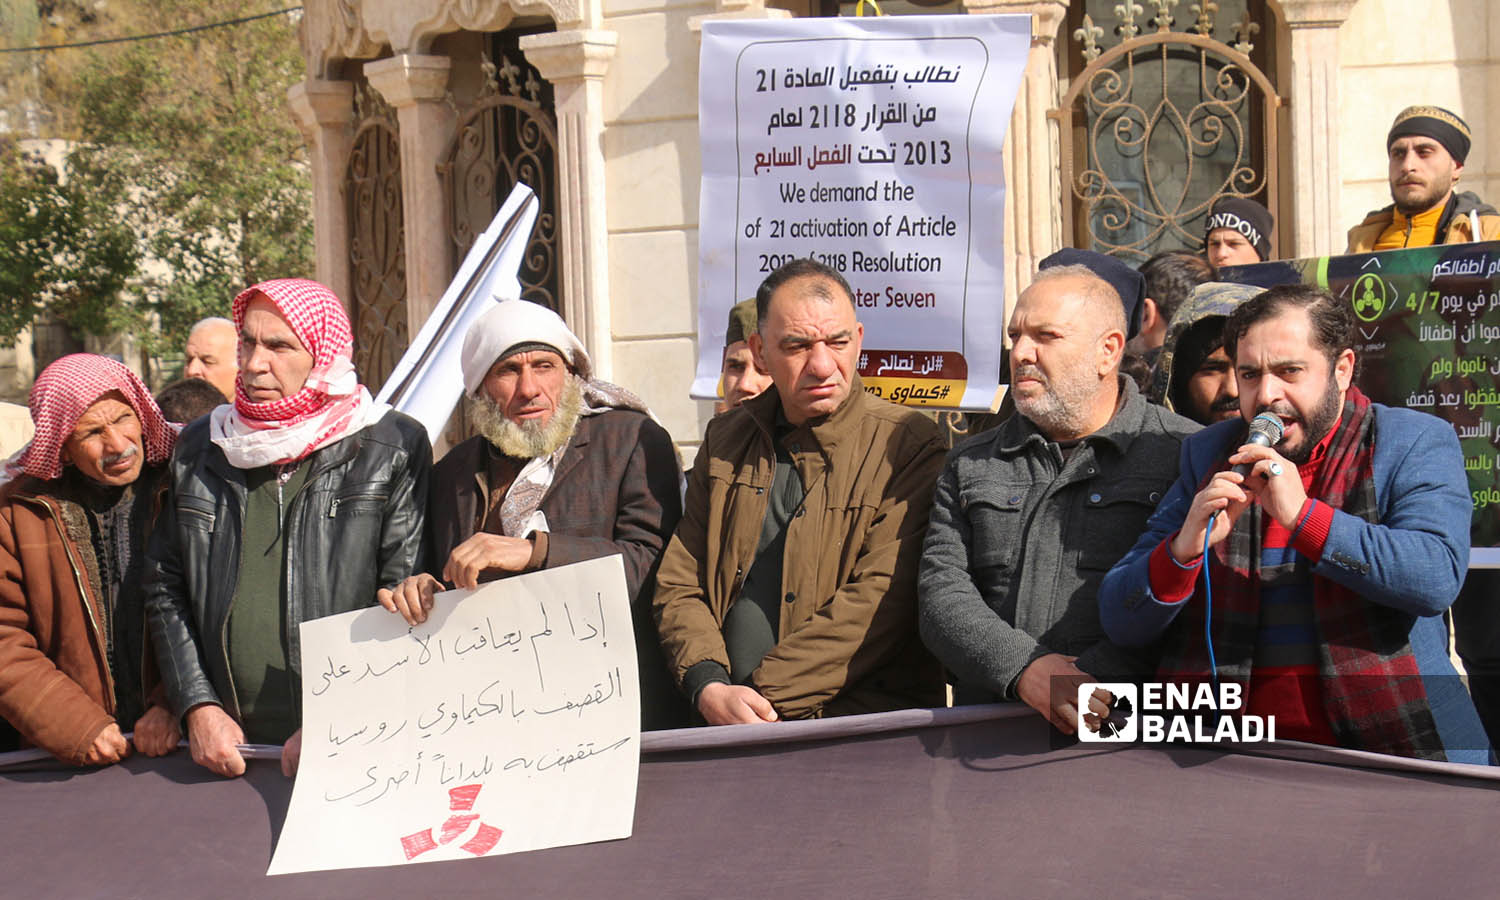 متظاهرون يرفعون شعار محاسبة بشار الأسد مطلبنا - مدينة اعزاز 3 من شباط 2023 (عنب بلدي/ديان جنباز)